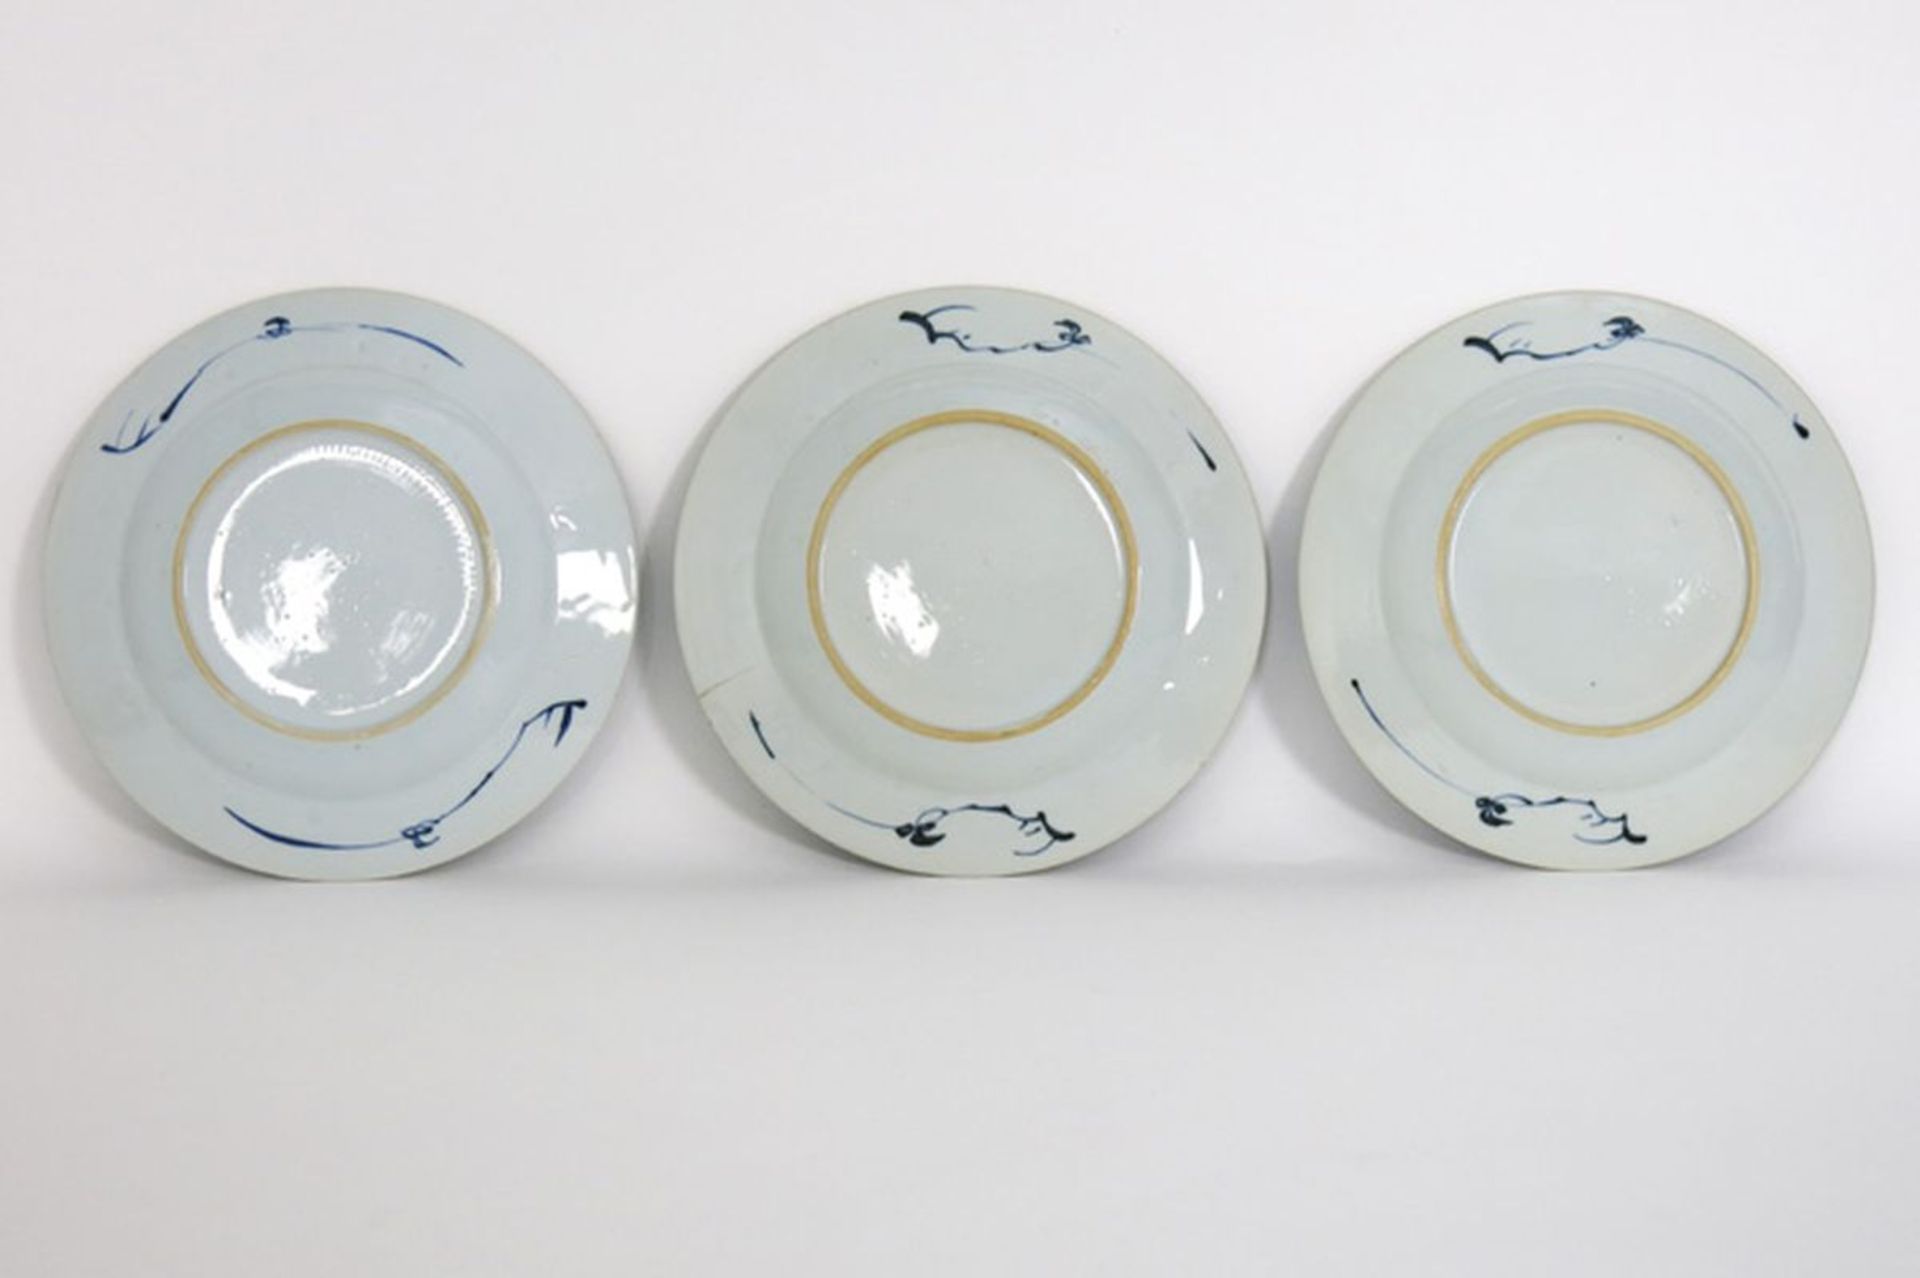 Reeks van drie achttiende eeuwse Chinese borden in porselein met een blauwwit [...] - Bild 2 aus 2